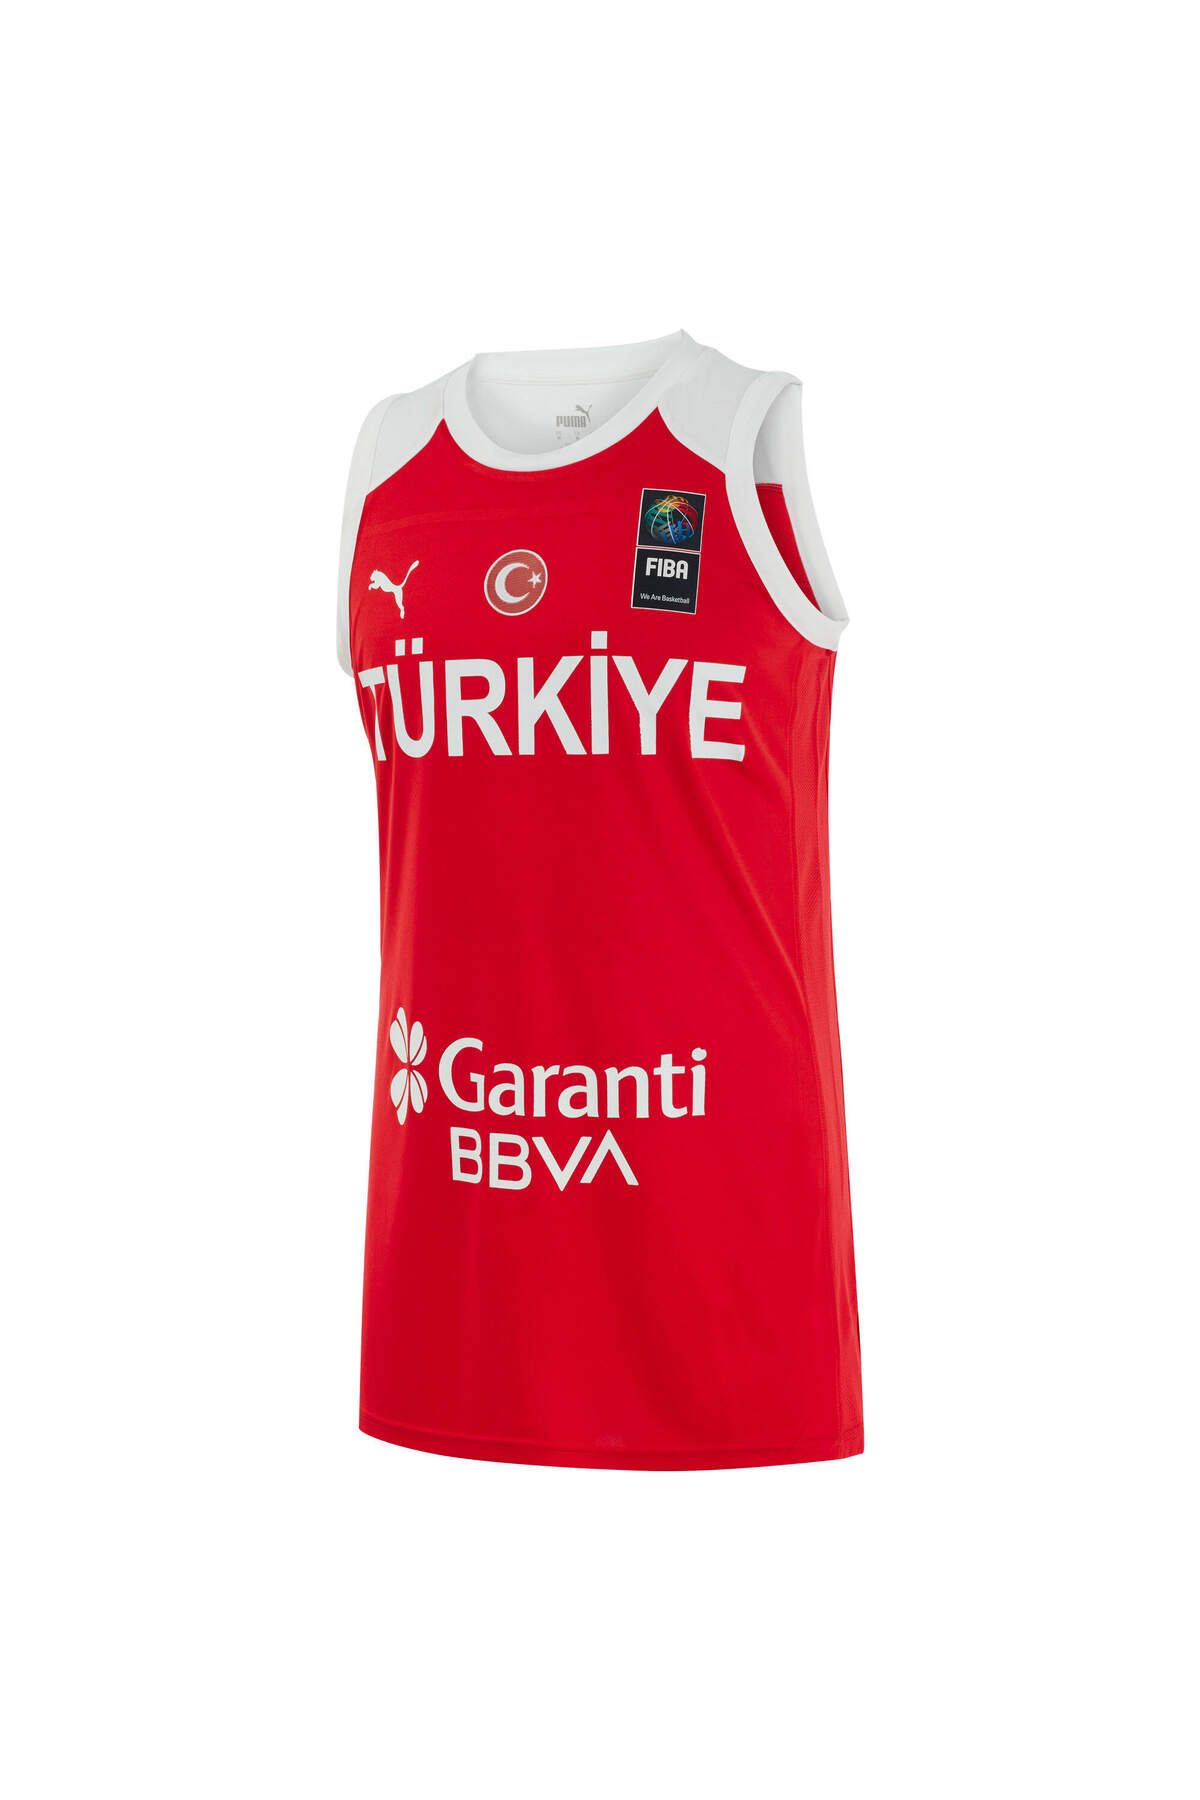 Puma Türkiye Basketbol Milli Takım Kadın Forma